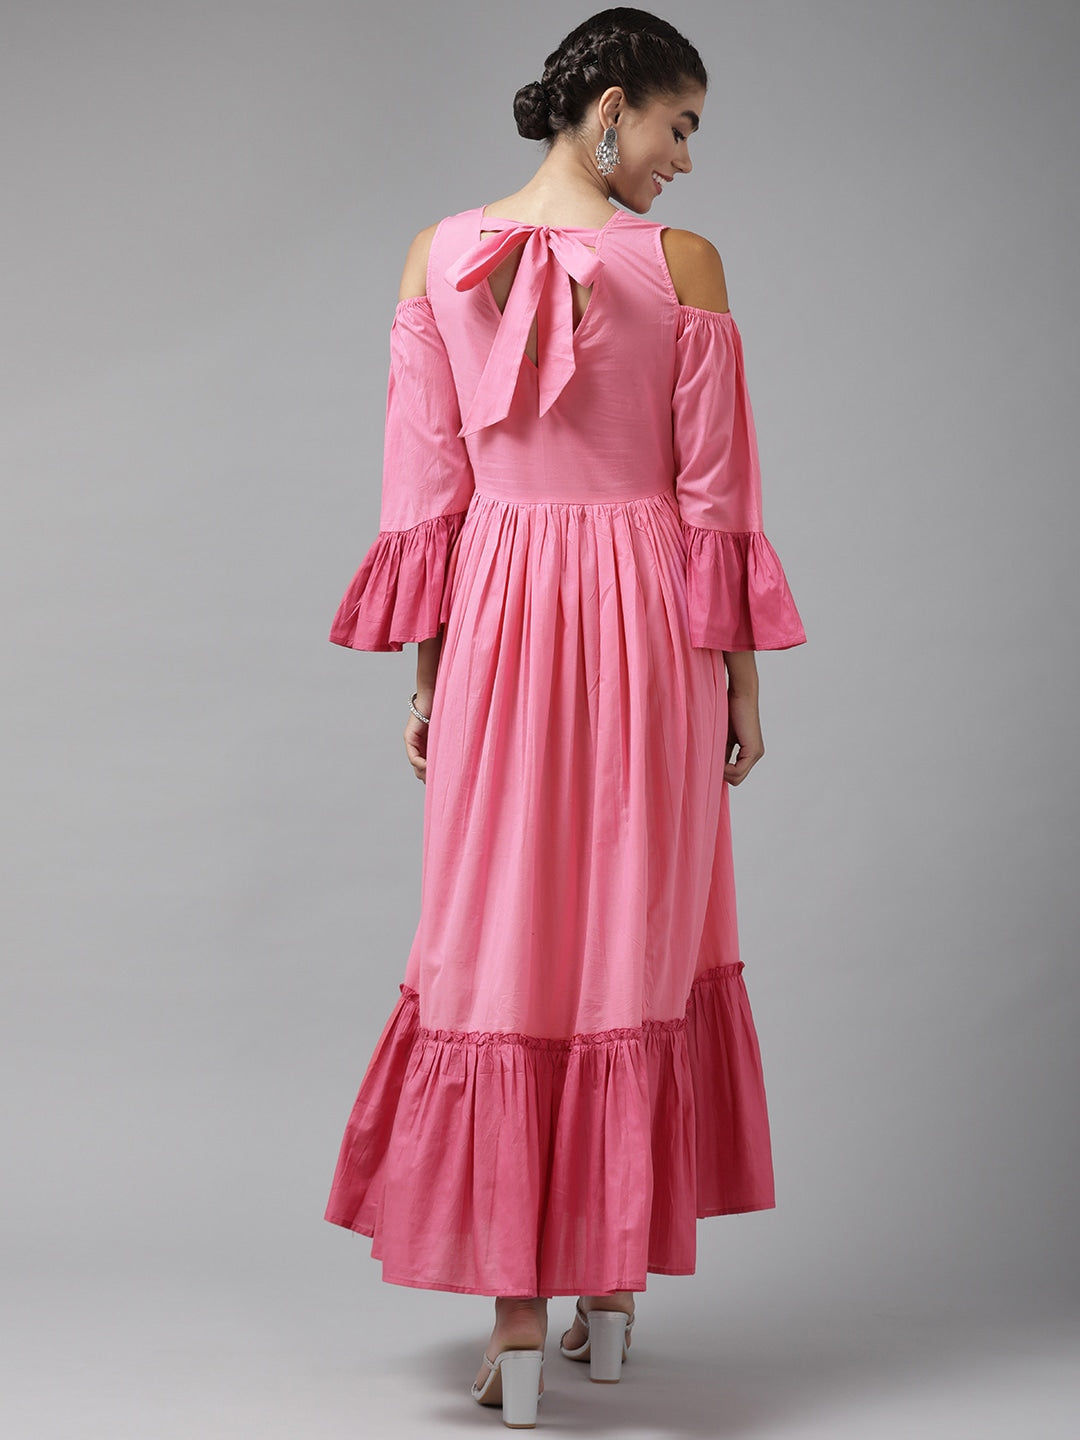 Yufta-Pink-Ethnic-Maxi-Dress-9658DRSPK